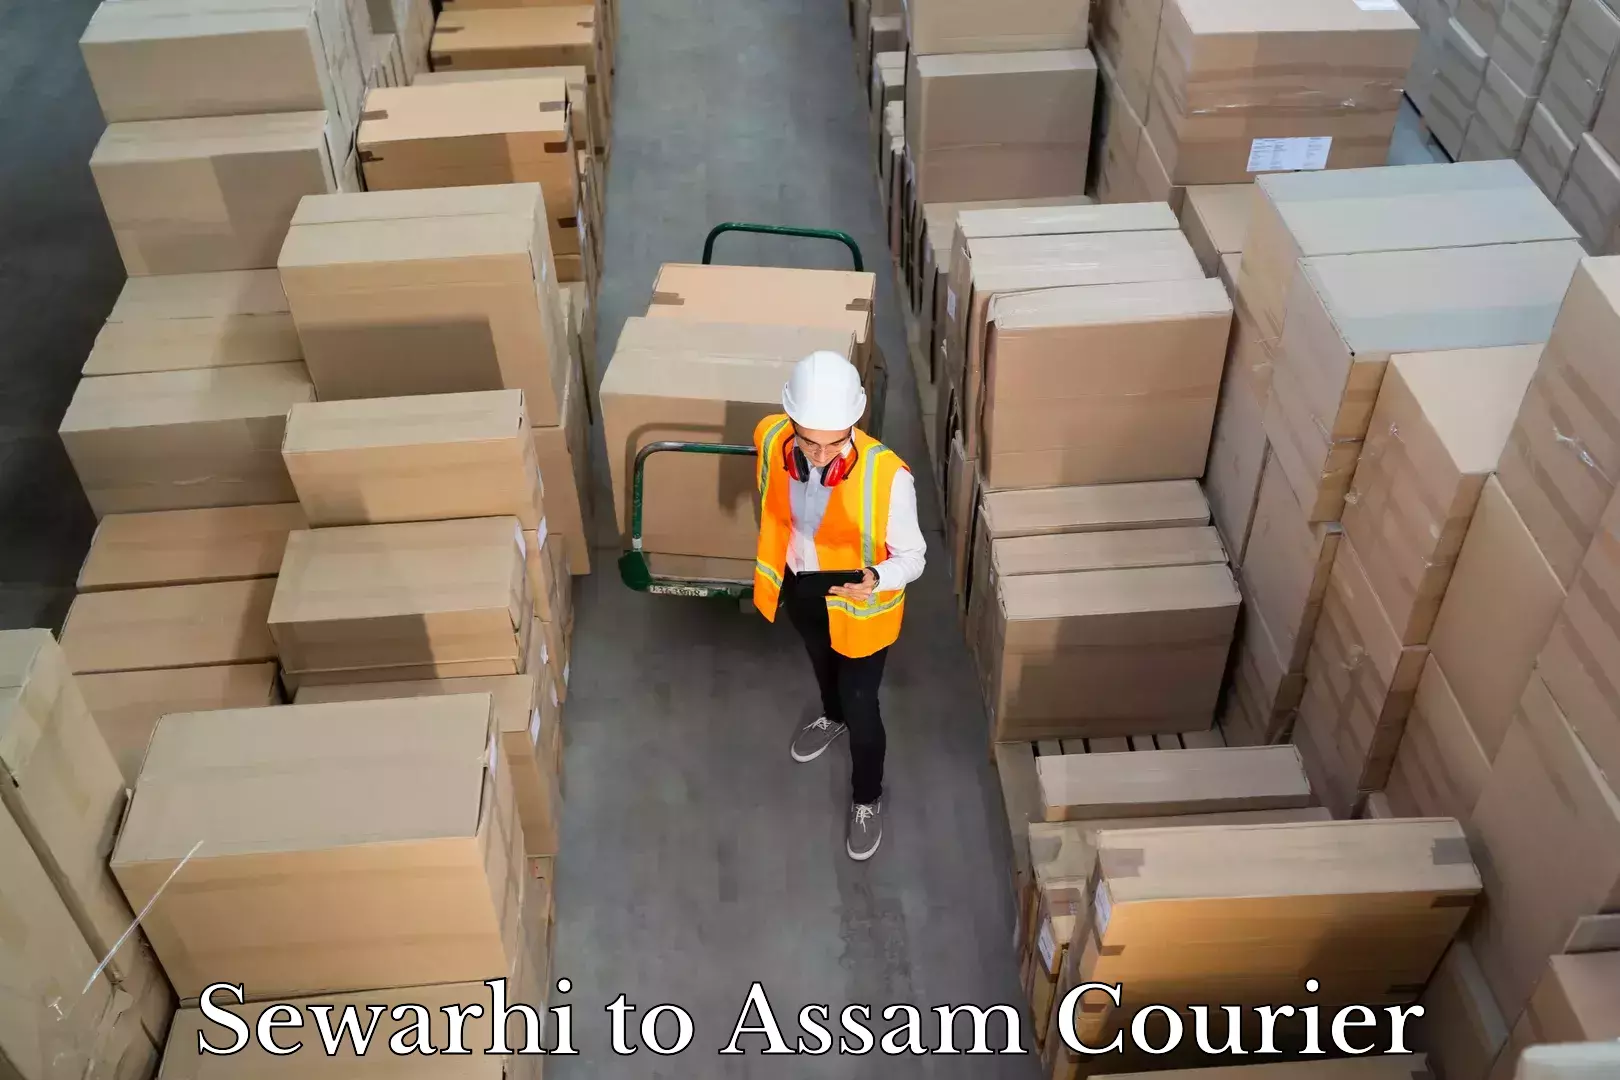 Luggage transit service Sewarhi to Assam